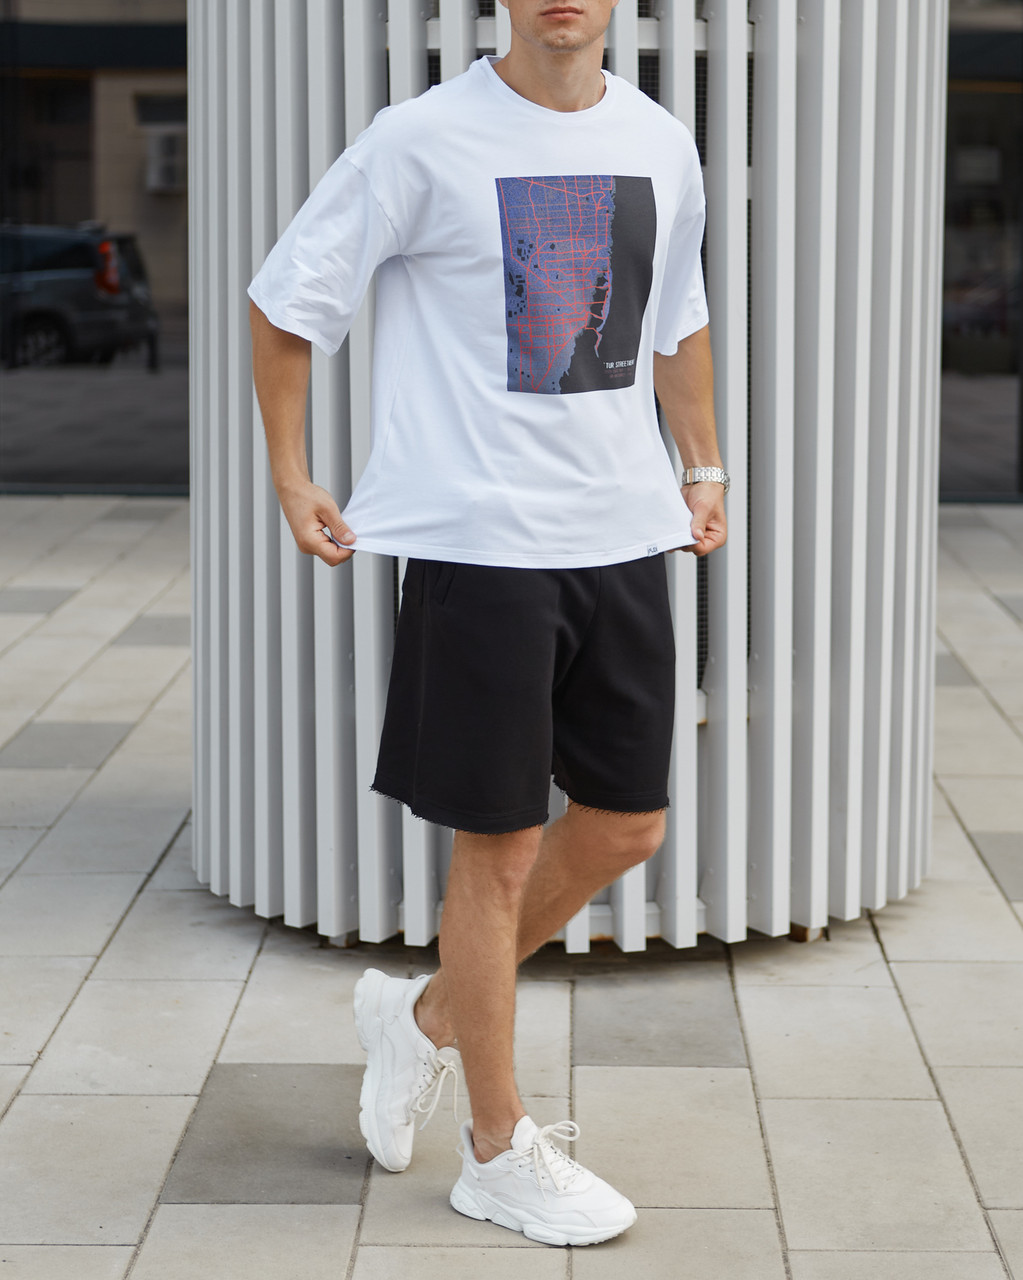 Чоловічі футболки Каліфорнія біла оверсайз модель від бренду Тур TURWEAR - Фото 1